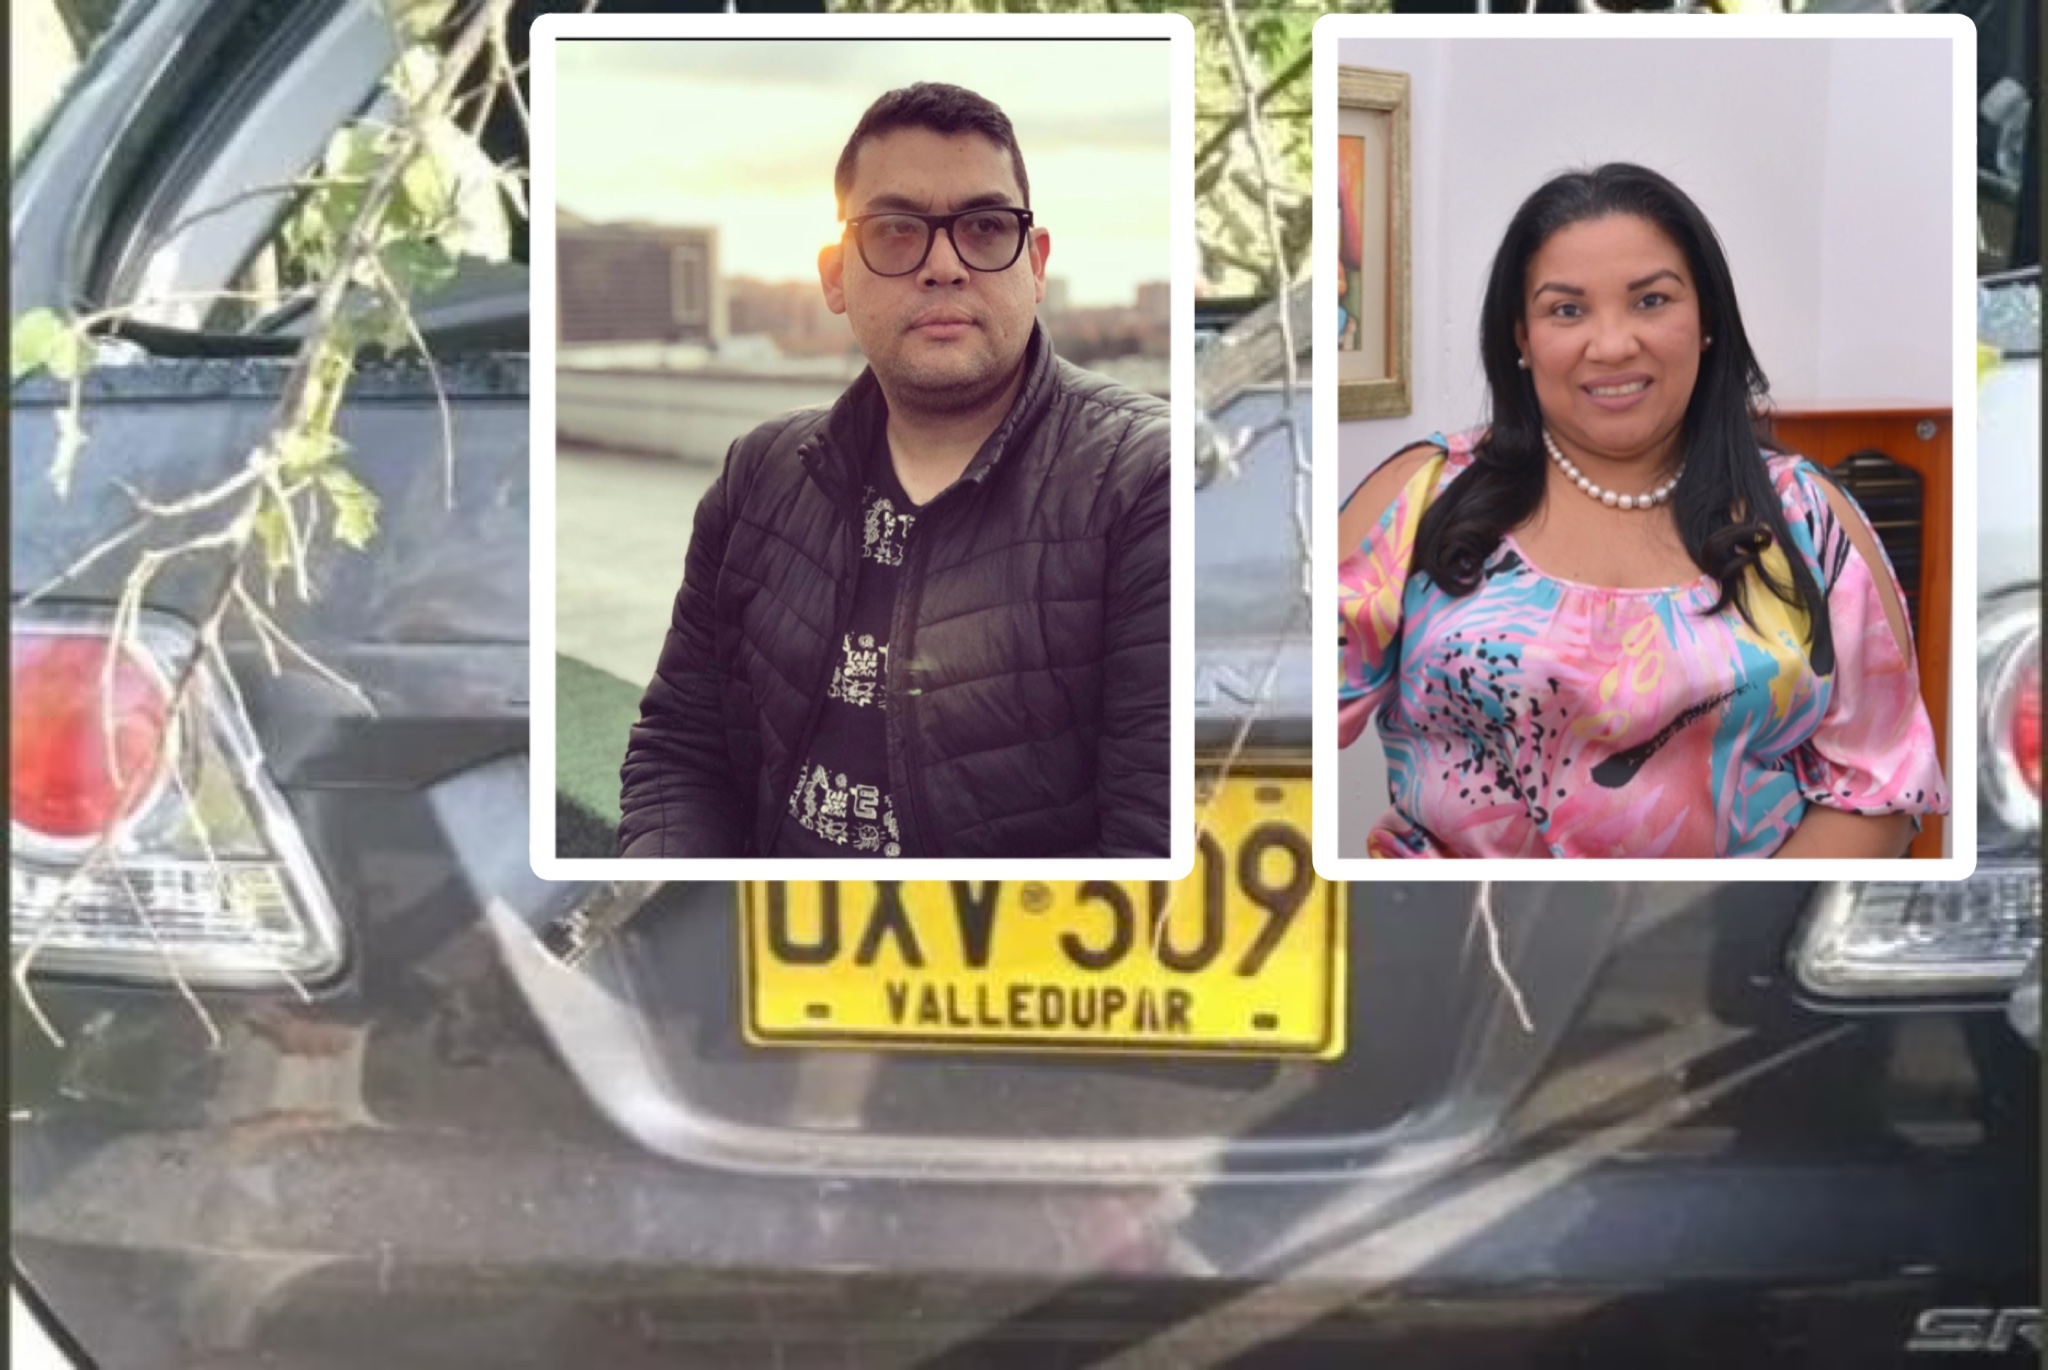 Periodismo de Valledupar está de luto: accidente automovilístico acabó con la vida de dos personas en el Cesar